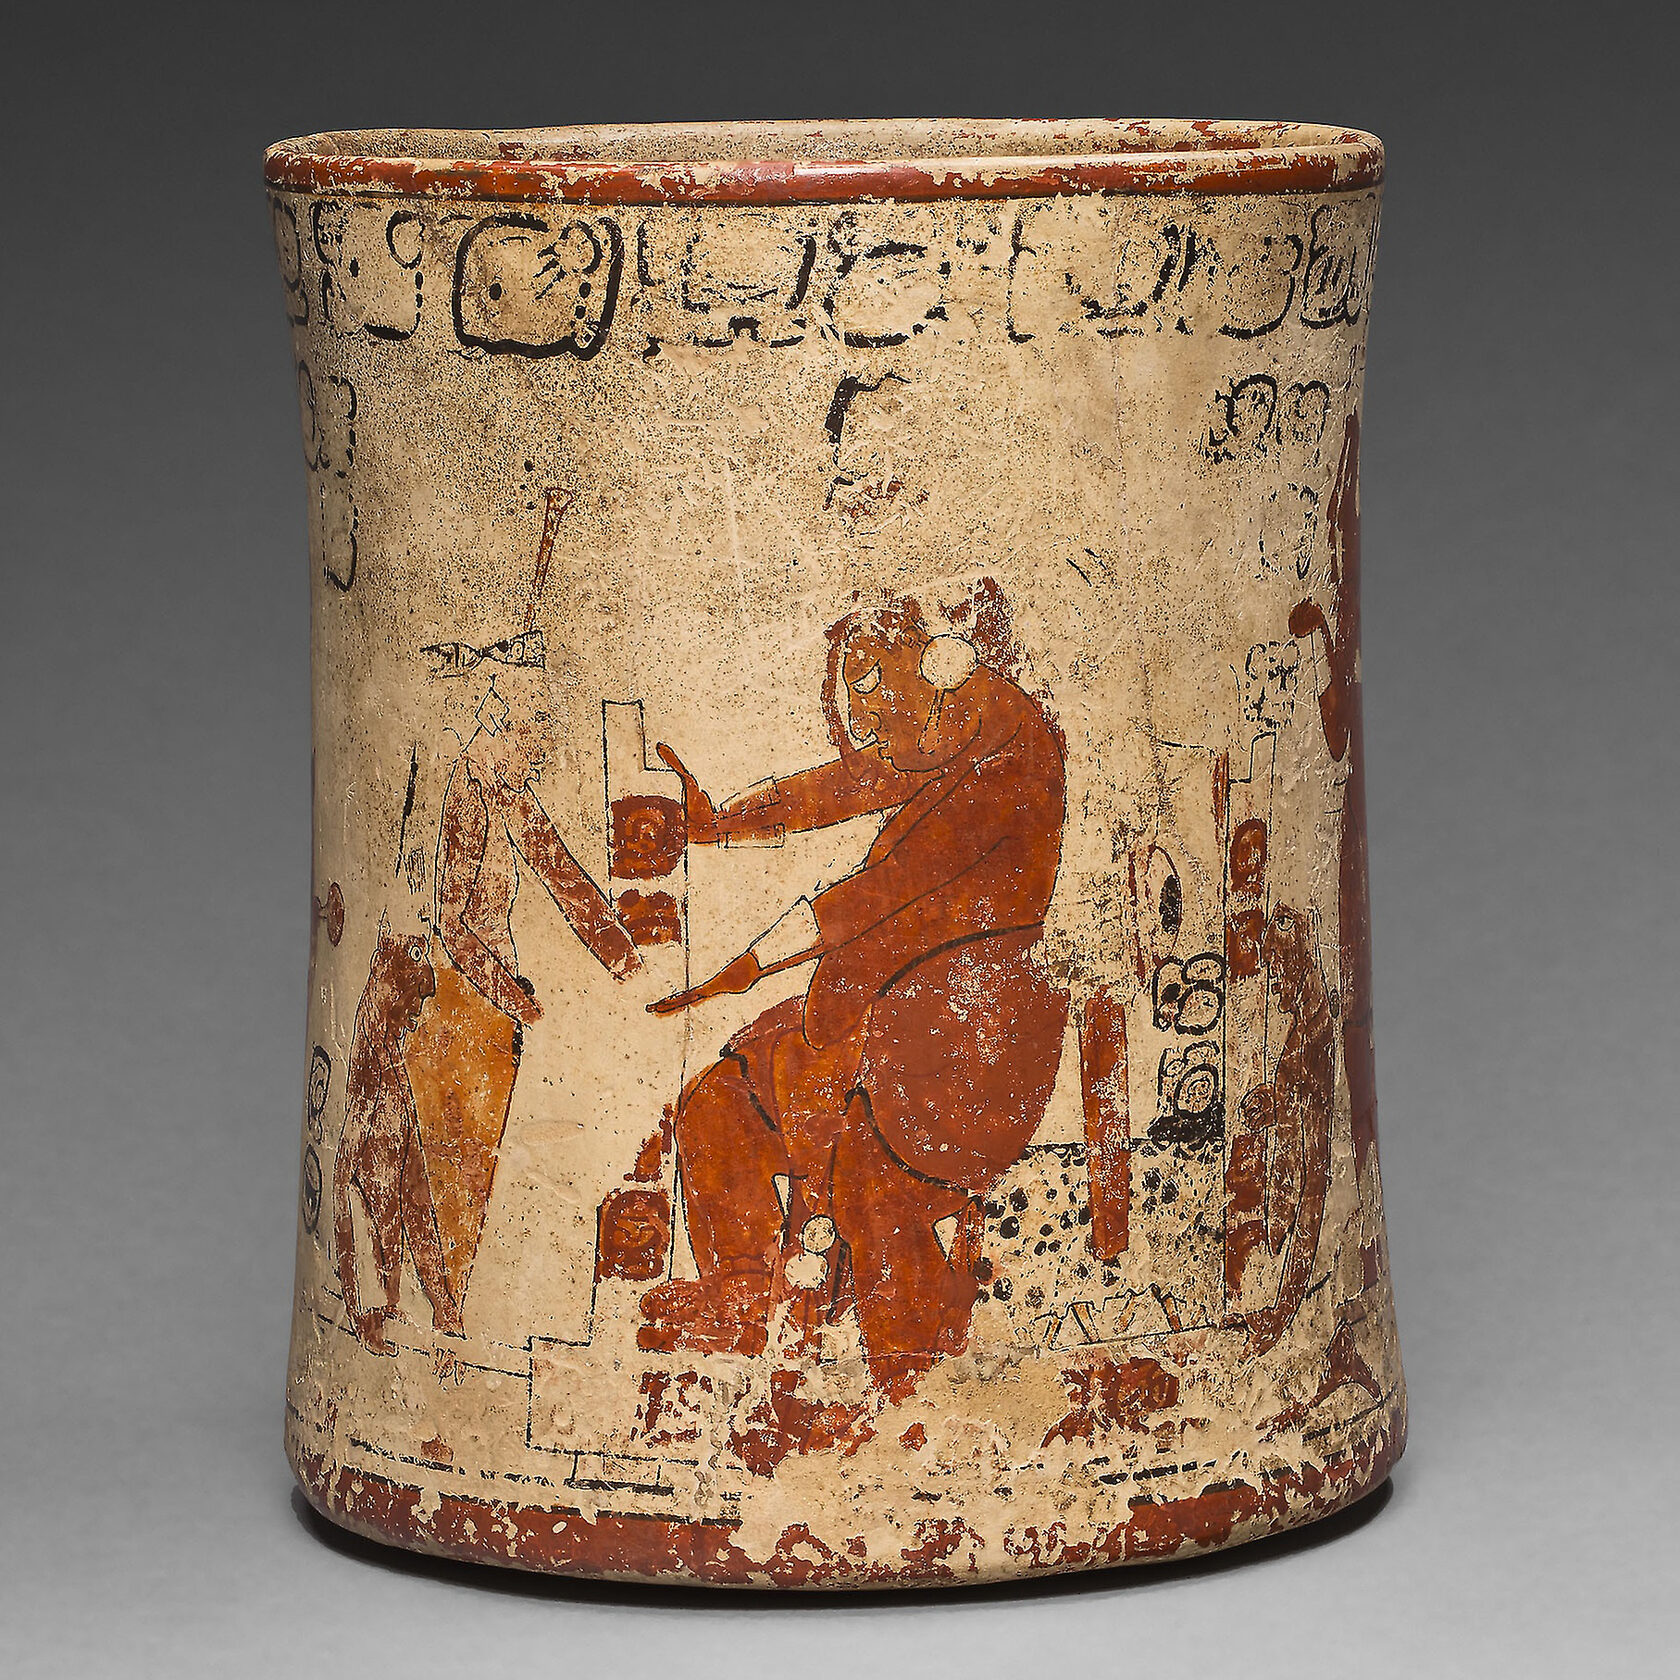 Сосуд со сценой инаугурации правителя. Майя, 650-800 гг. н.э. Коллекция Art Institute of Chicago.